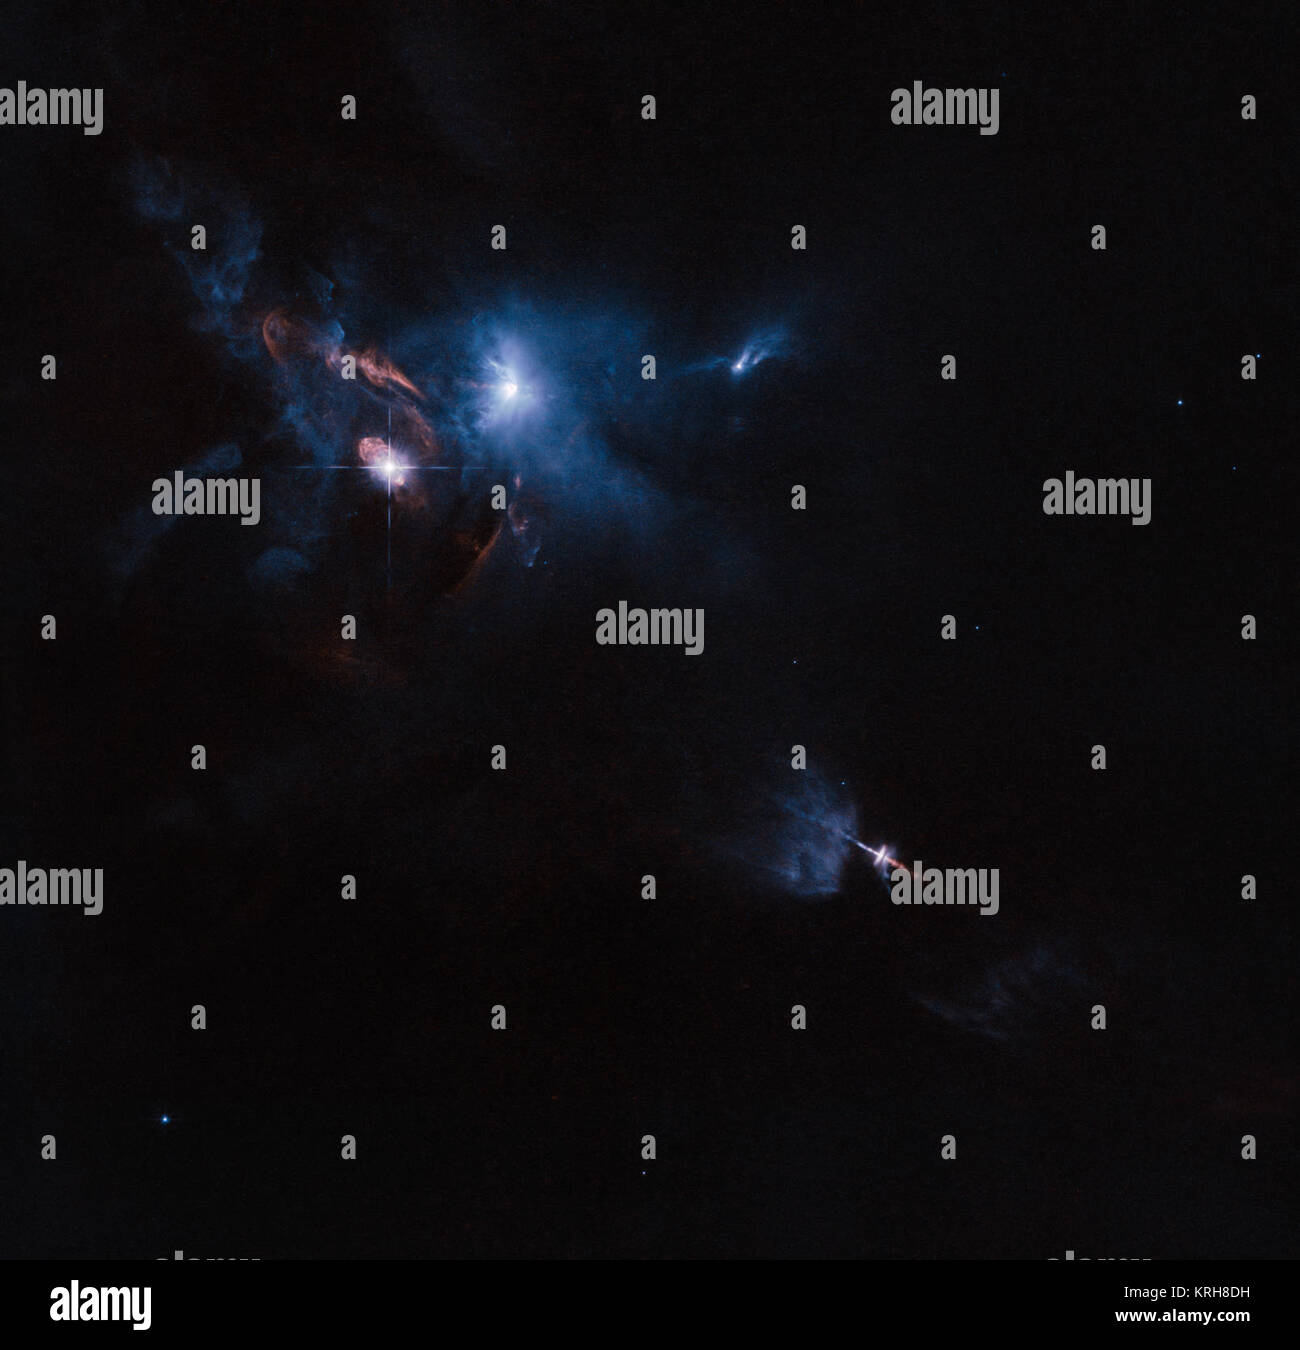 Die NASA/ESA Hubble Space Telescope hat einen beeindruckenden Blick auf ein Vielfaches star System namens XZ Tauri aufgeschnappt, sein Nachbar HL Tauri und mehrere in der Nähe junge stellare Objekte. XZ Tauri weht eine heiße Blase von Gas in den umgebenden Raum, die mit hellen und schönen Klumpen, die leuchtdioden sind starke Winde und Jets gefüllt ist. Diese Objekte der Region beleuchten, die Schaffung einer wirklich dramatischen Szene. Hubble Fänge Jets, Blasen, platzt der Licht im Stier (15726704895) Stockfoto